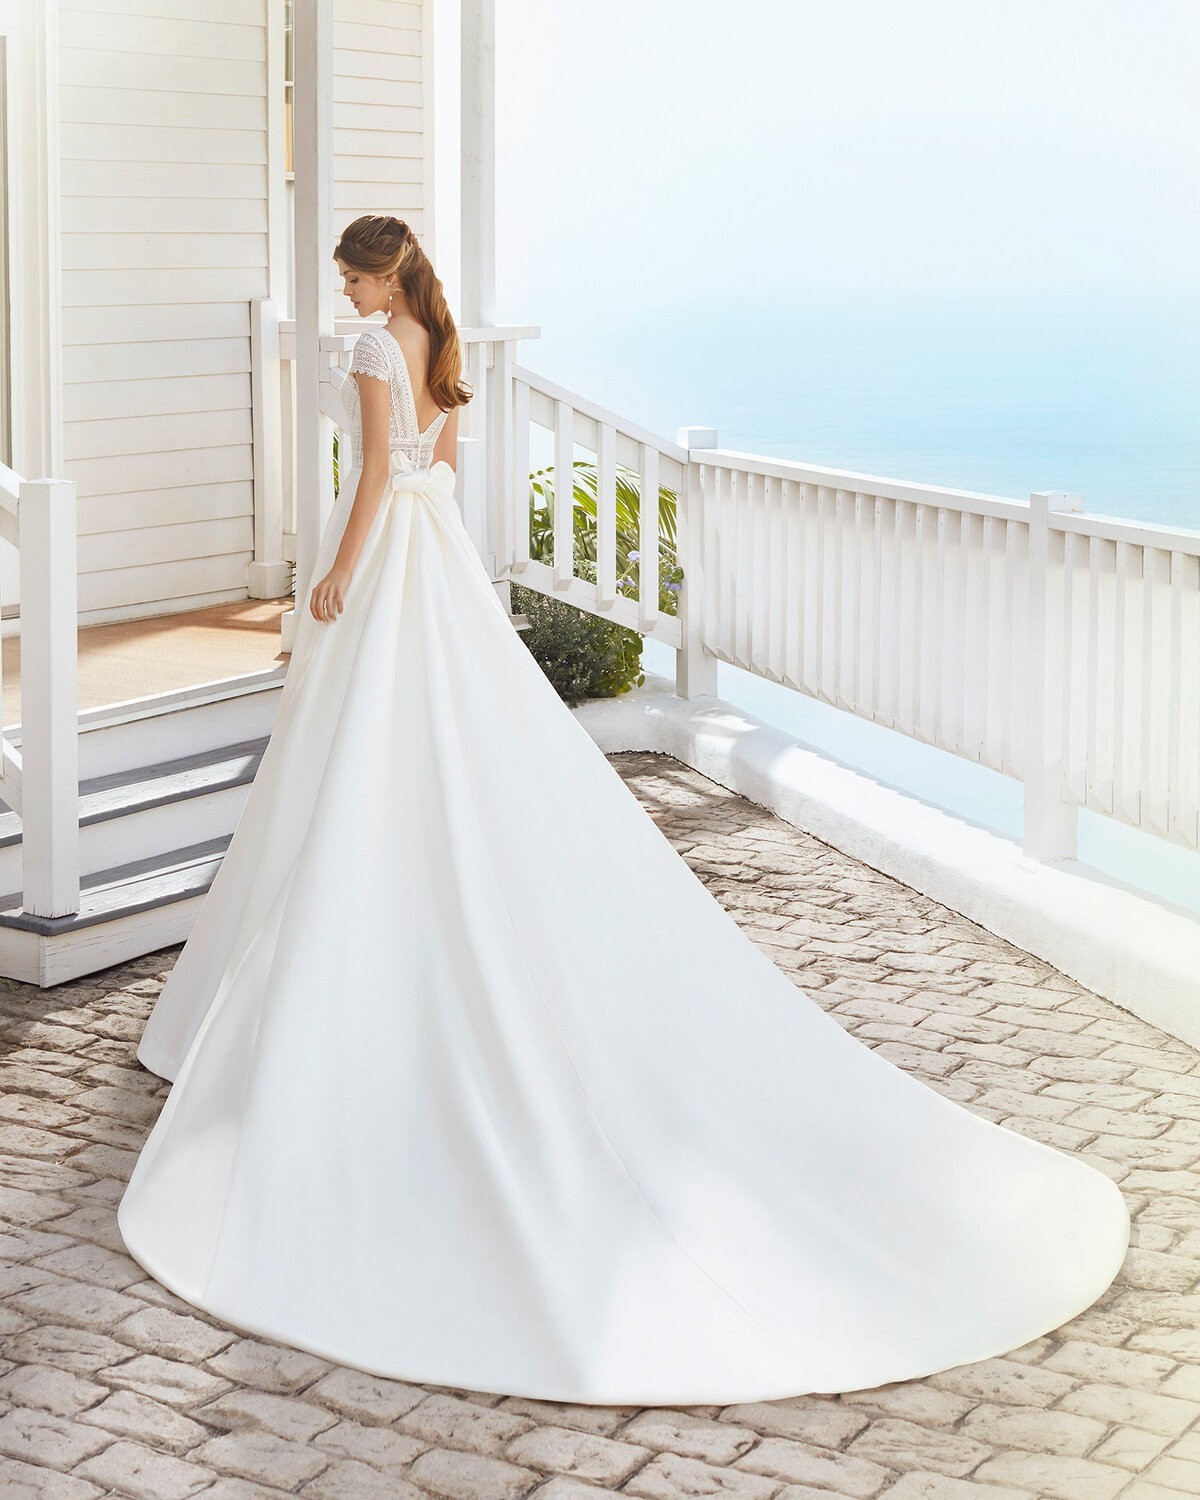 CUARZO - abito da sposa collezione 2020 - Rosa Clarà